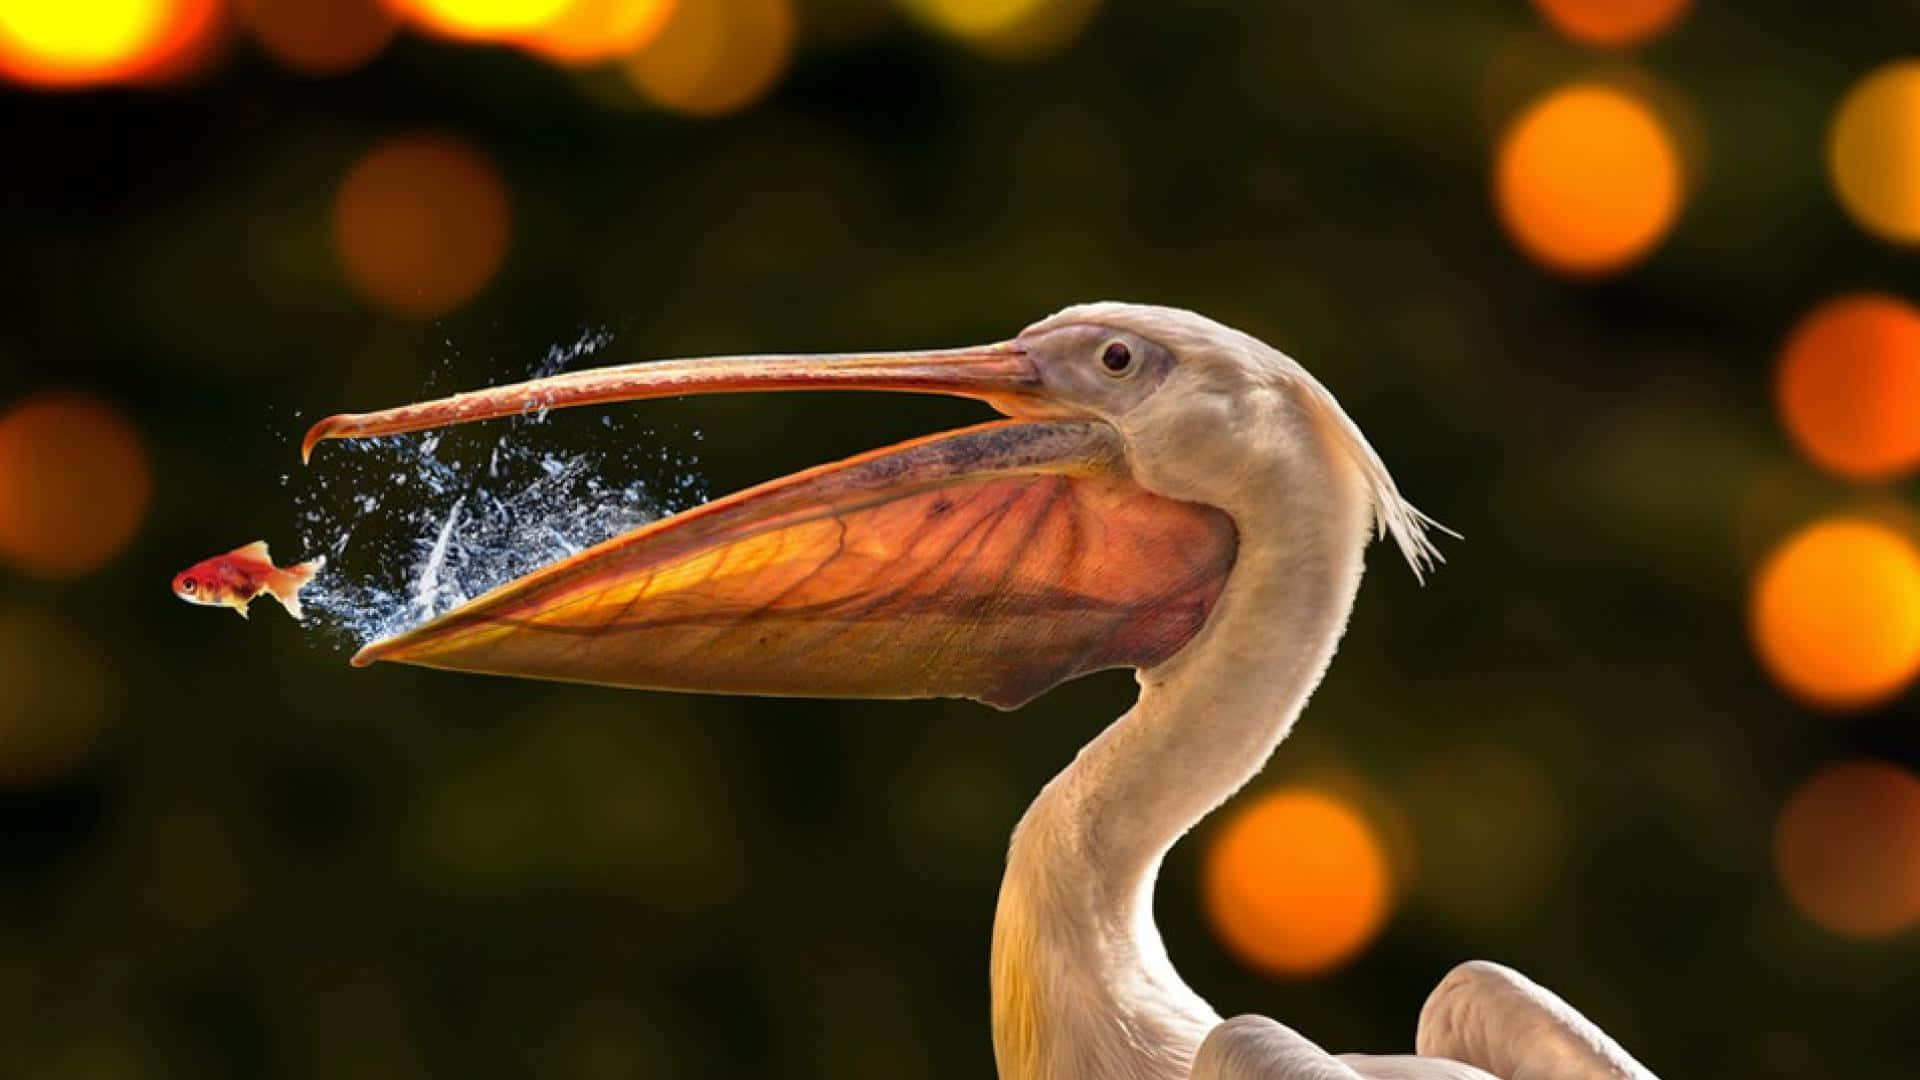 Majestic Pelicans take flight